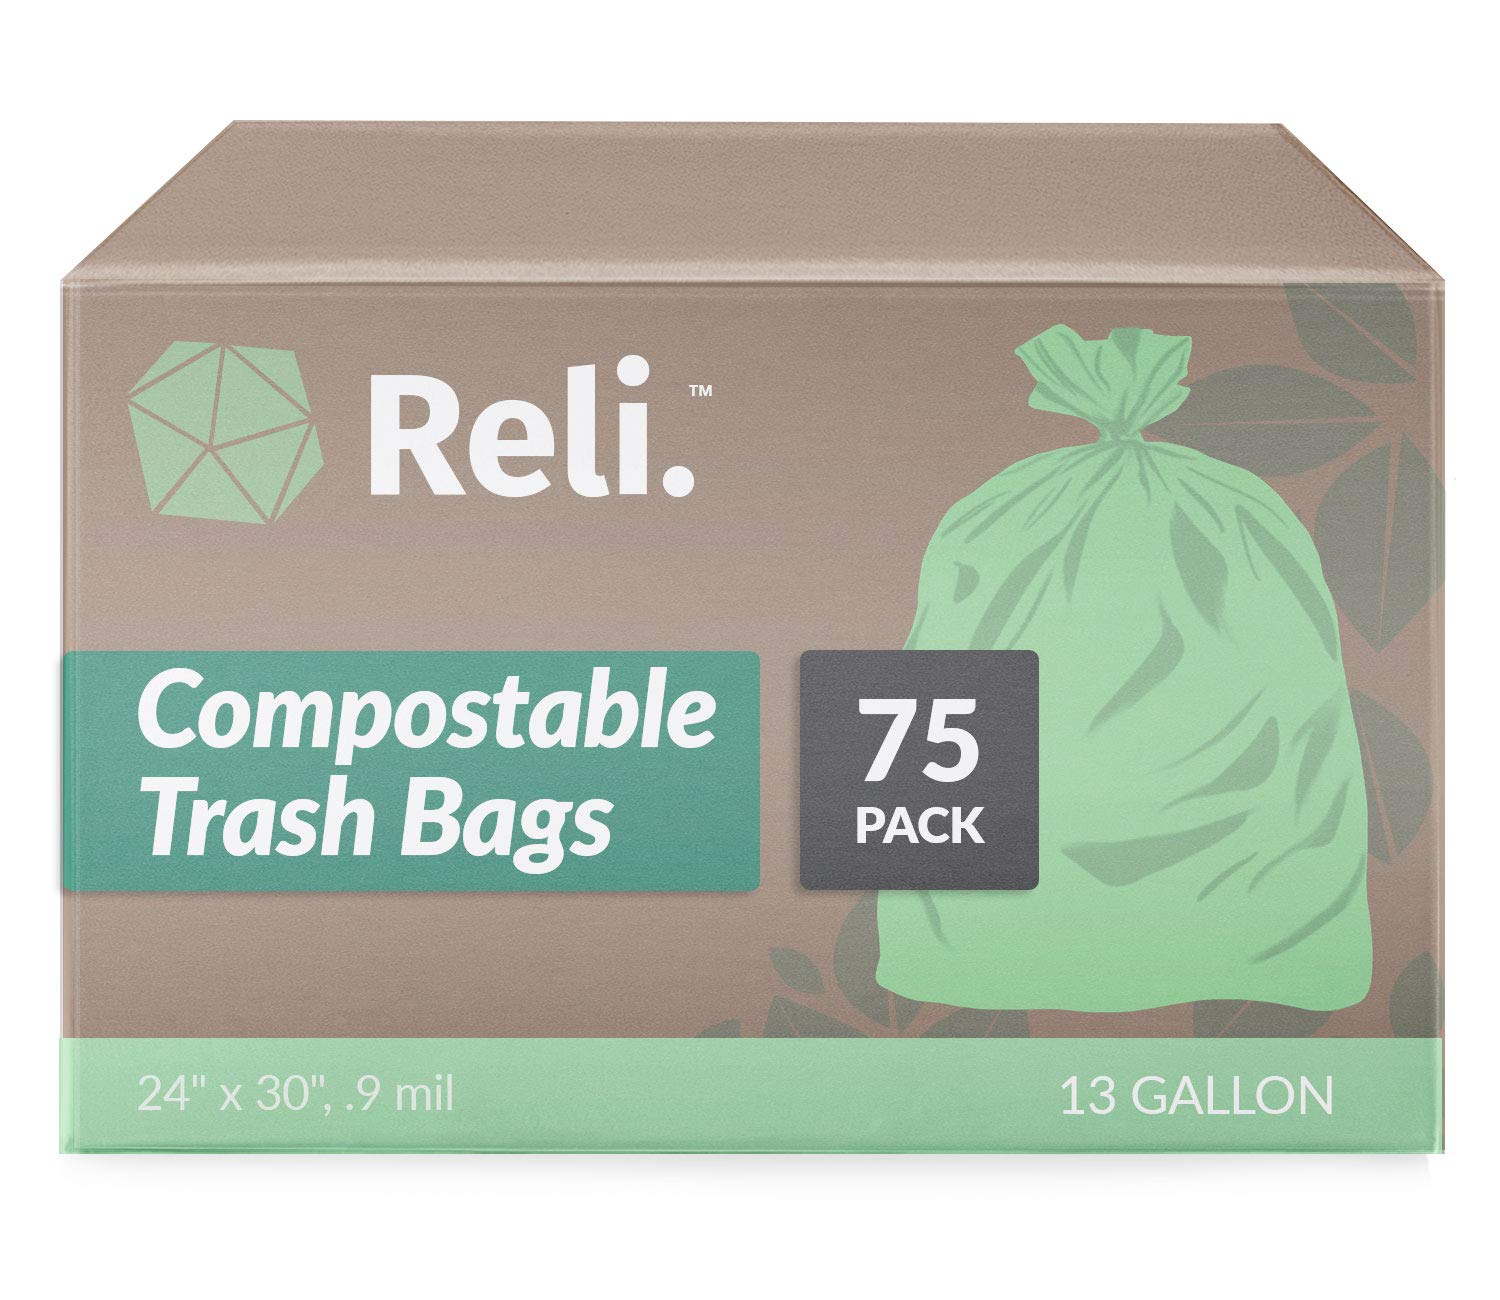 Reli. ProGrade Contractor Trash Bags 55 Gallon (20 Bags w/Ties